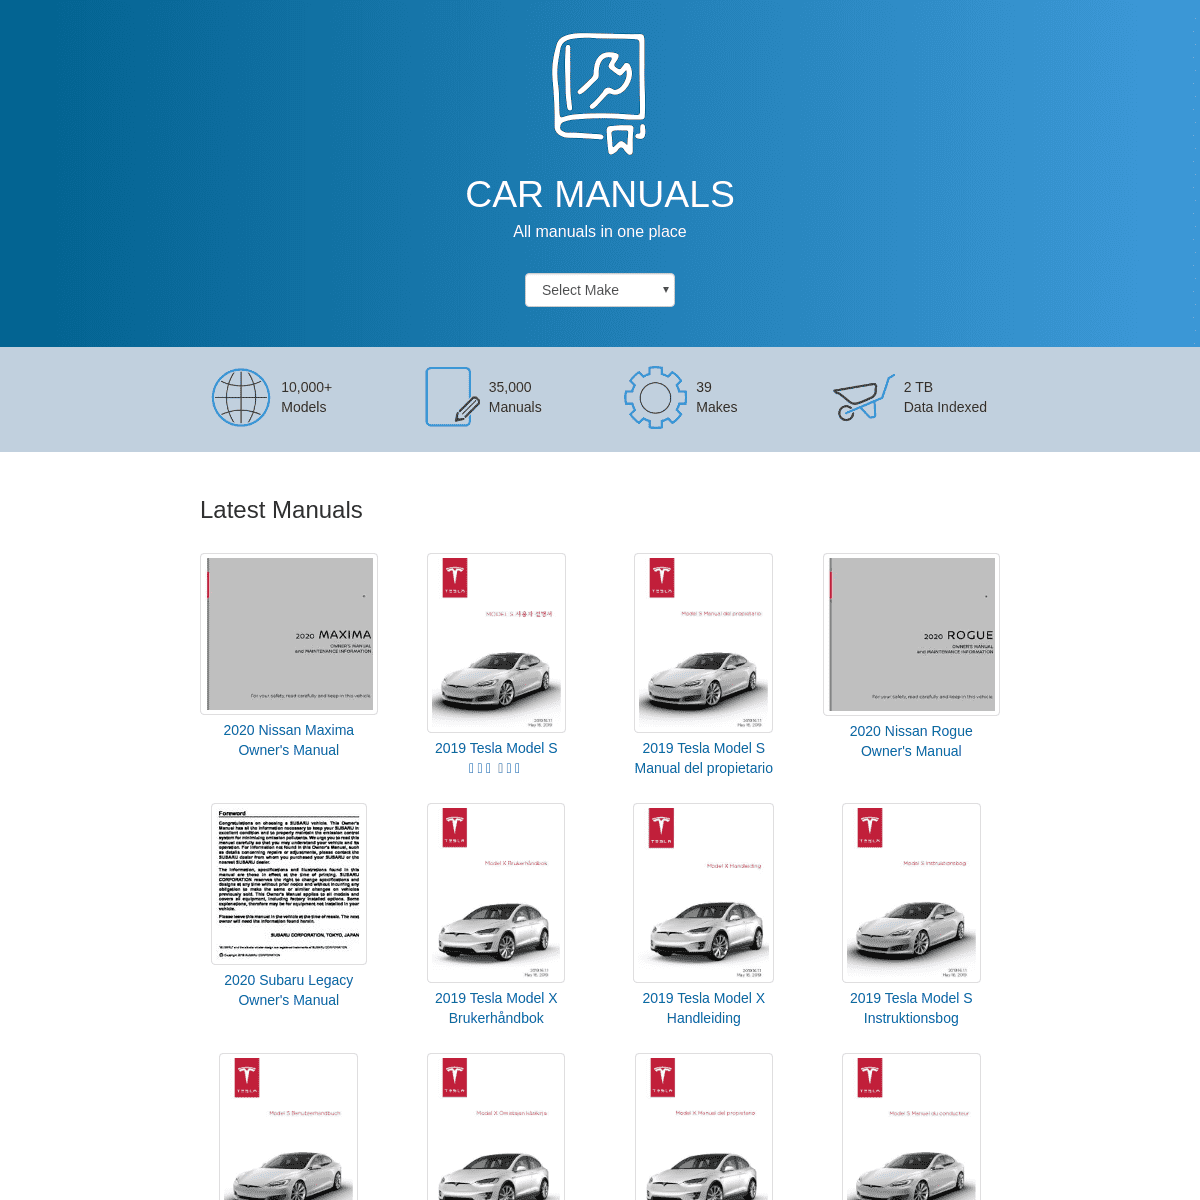 A complete backup of carmanuals2.com